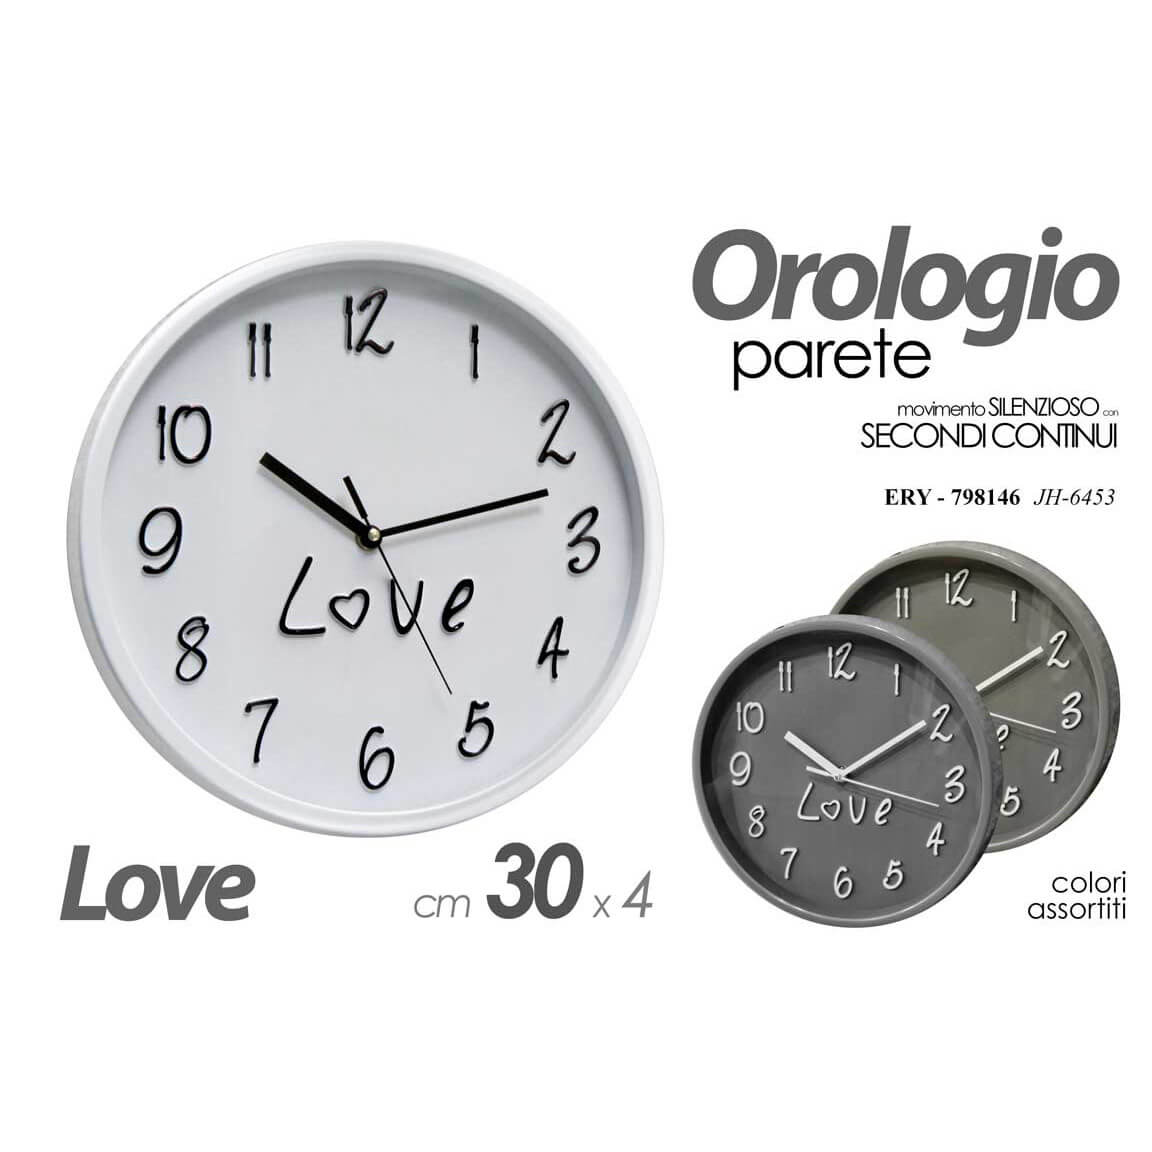 OROLOGIO TONDO D.30 LOVE ASSORTITI